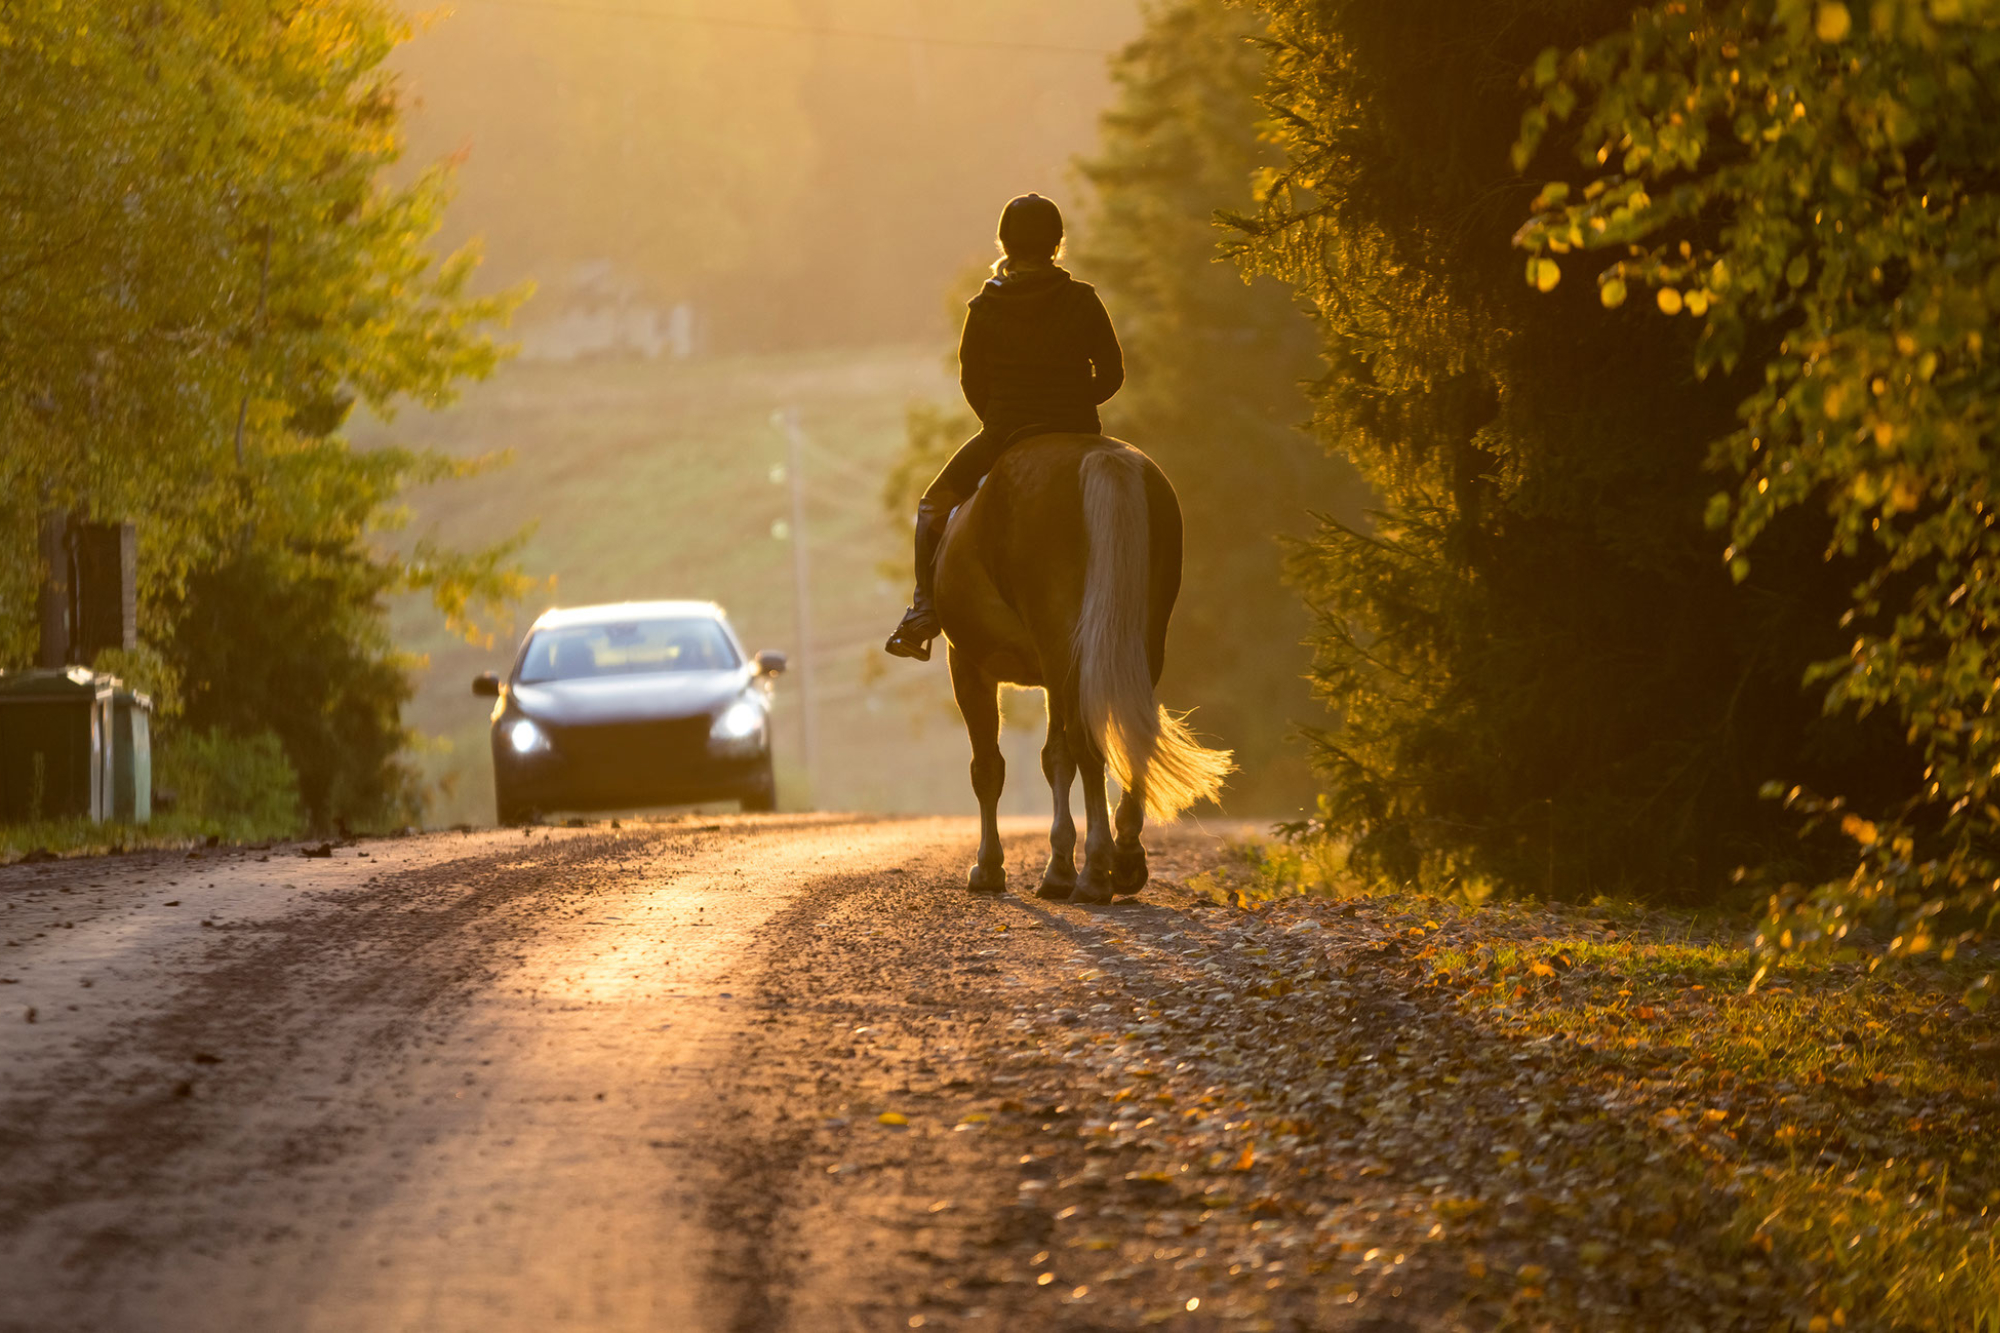 A car passes a horseback rider at sunset.